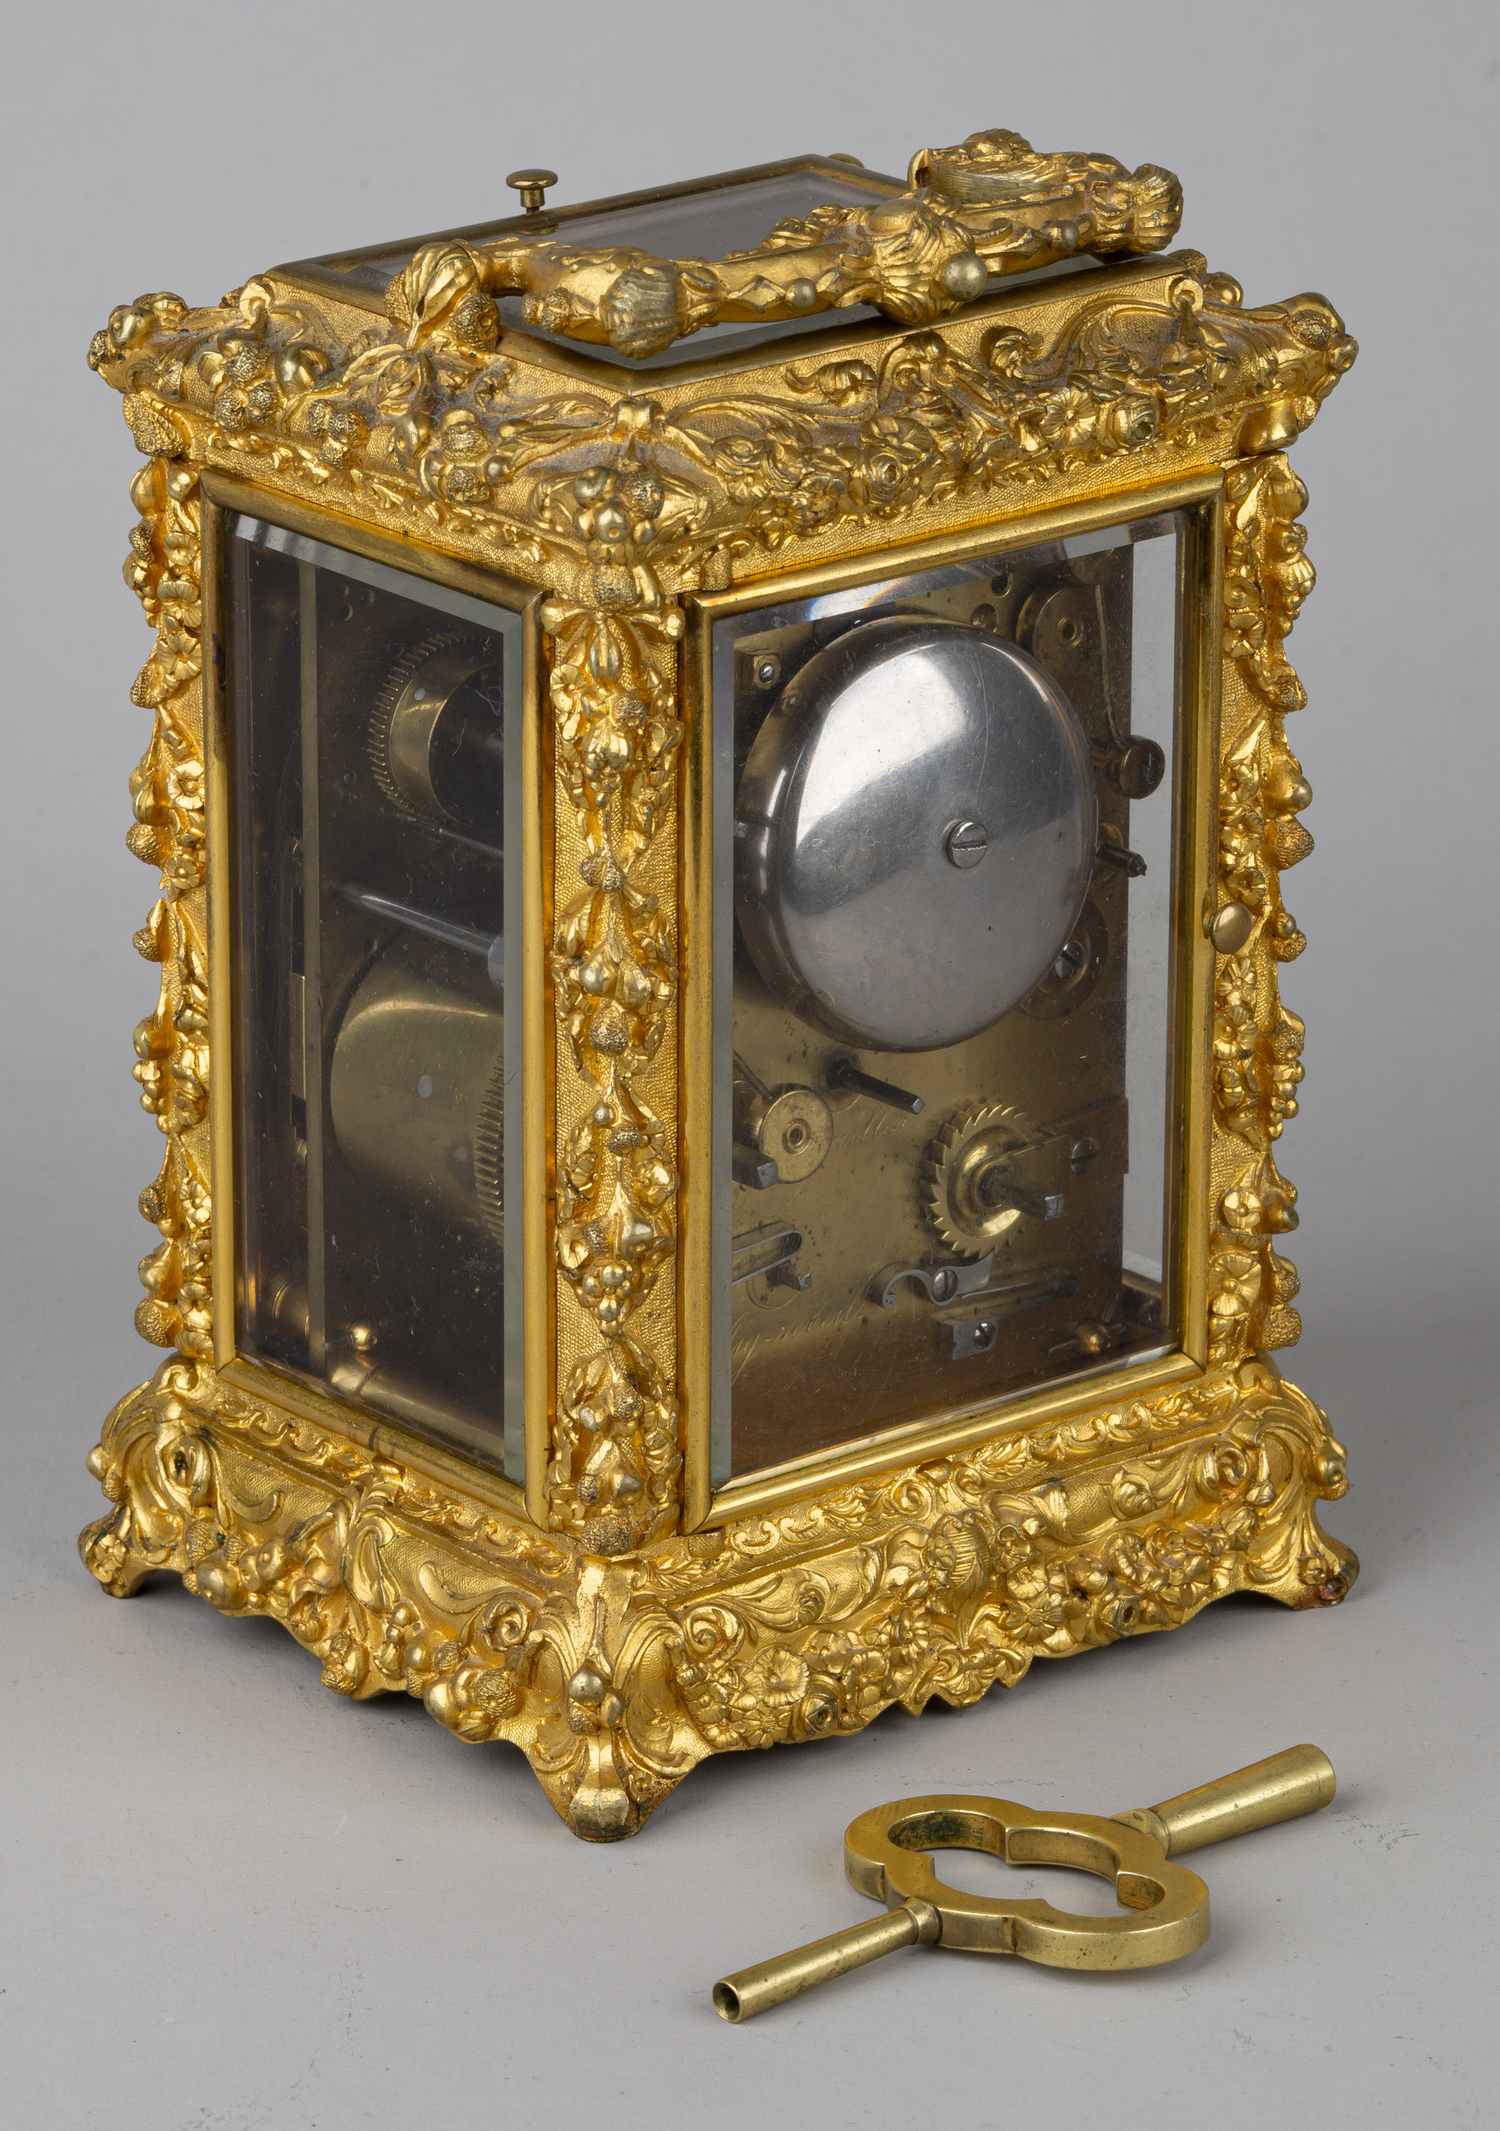 (Поставщик императорских дворов) Каретные часы в стиле Людовика XIV. Франция, фирма Le Roy et fils, вторая половина XIX века.